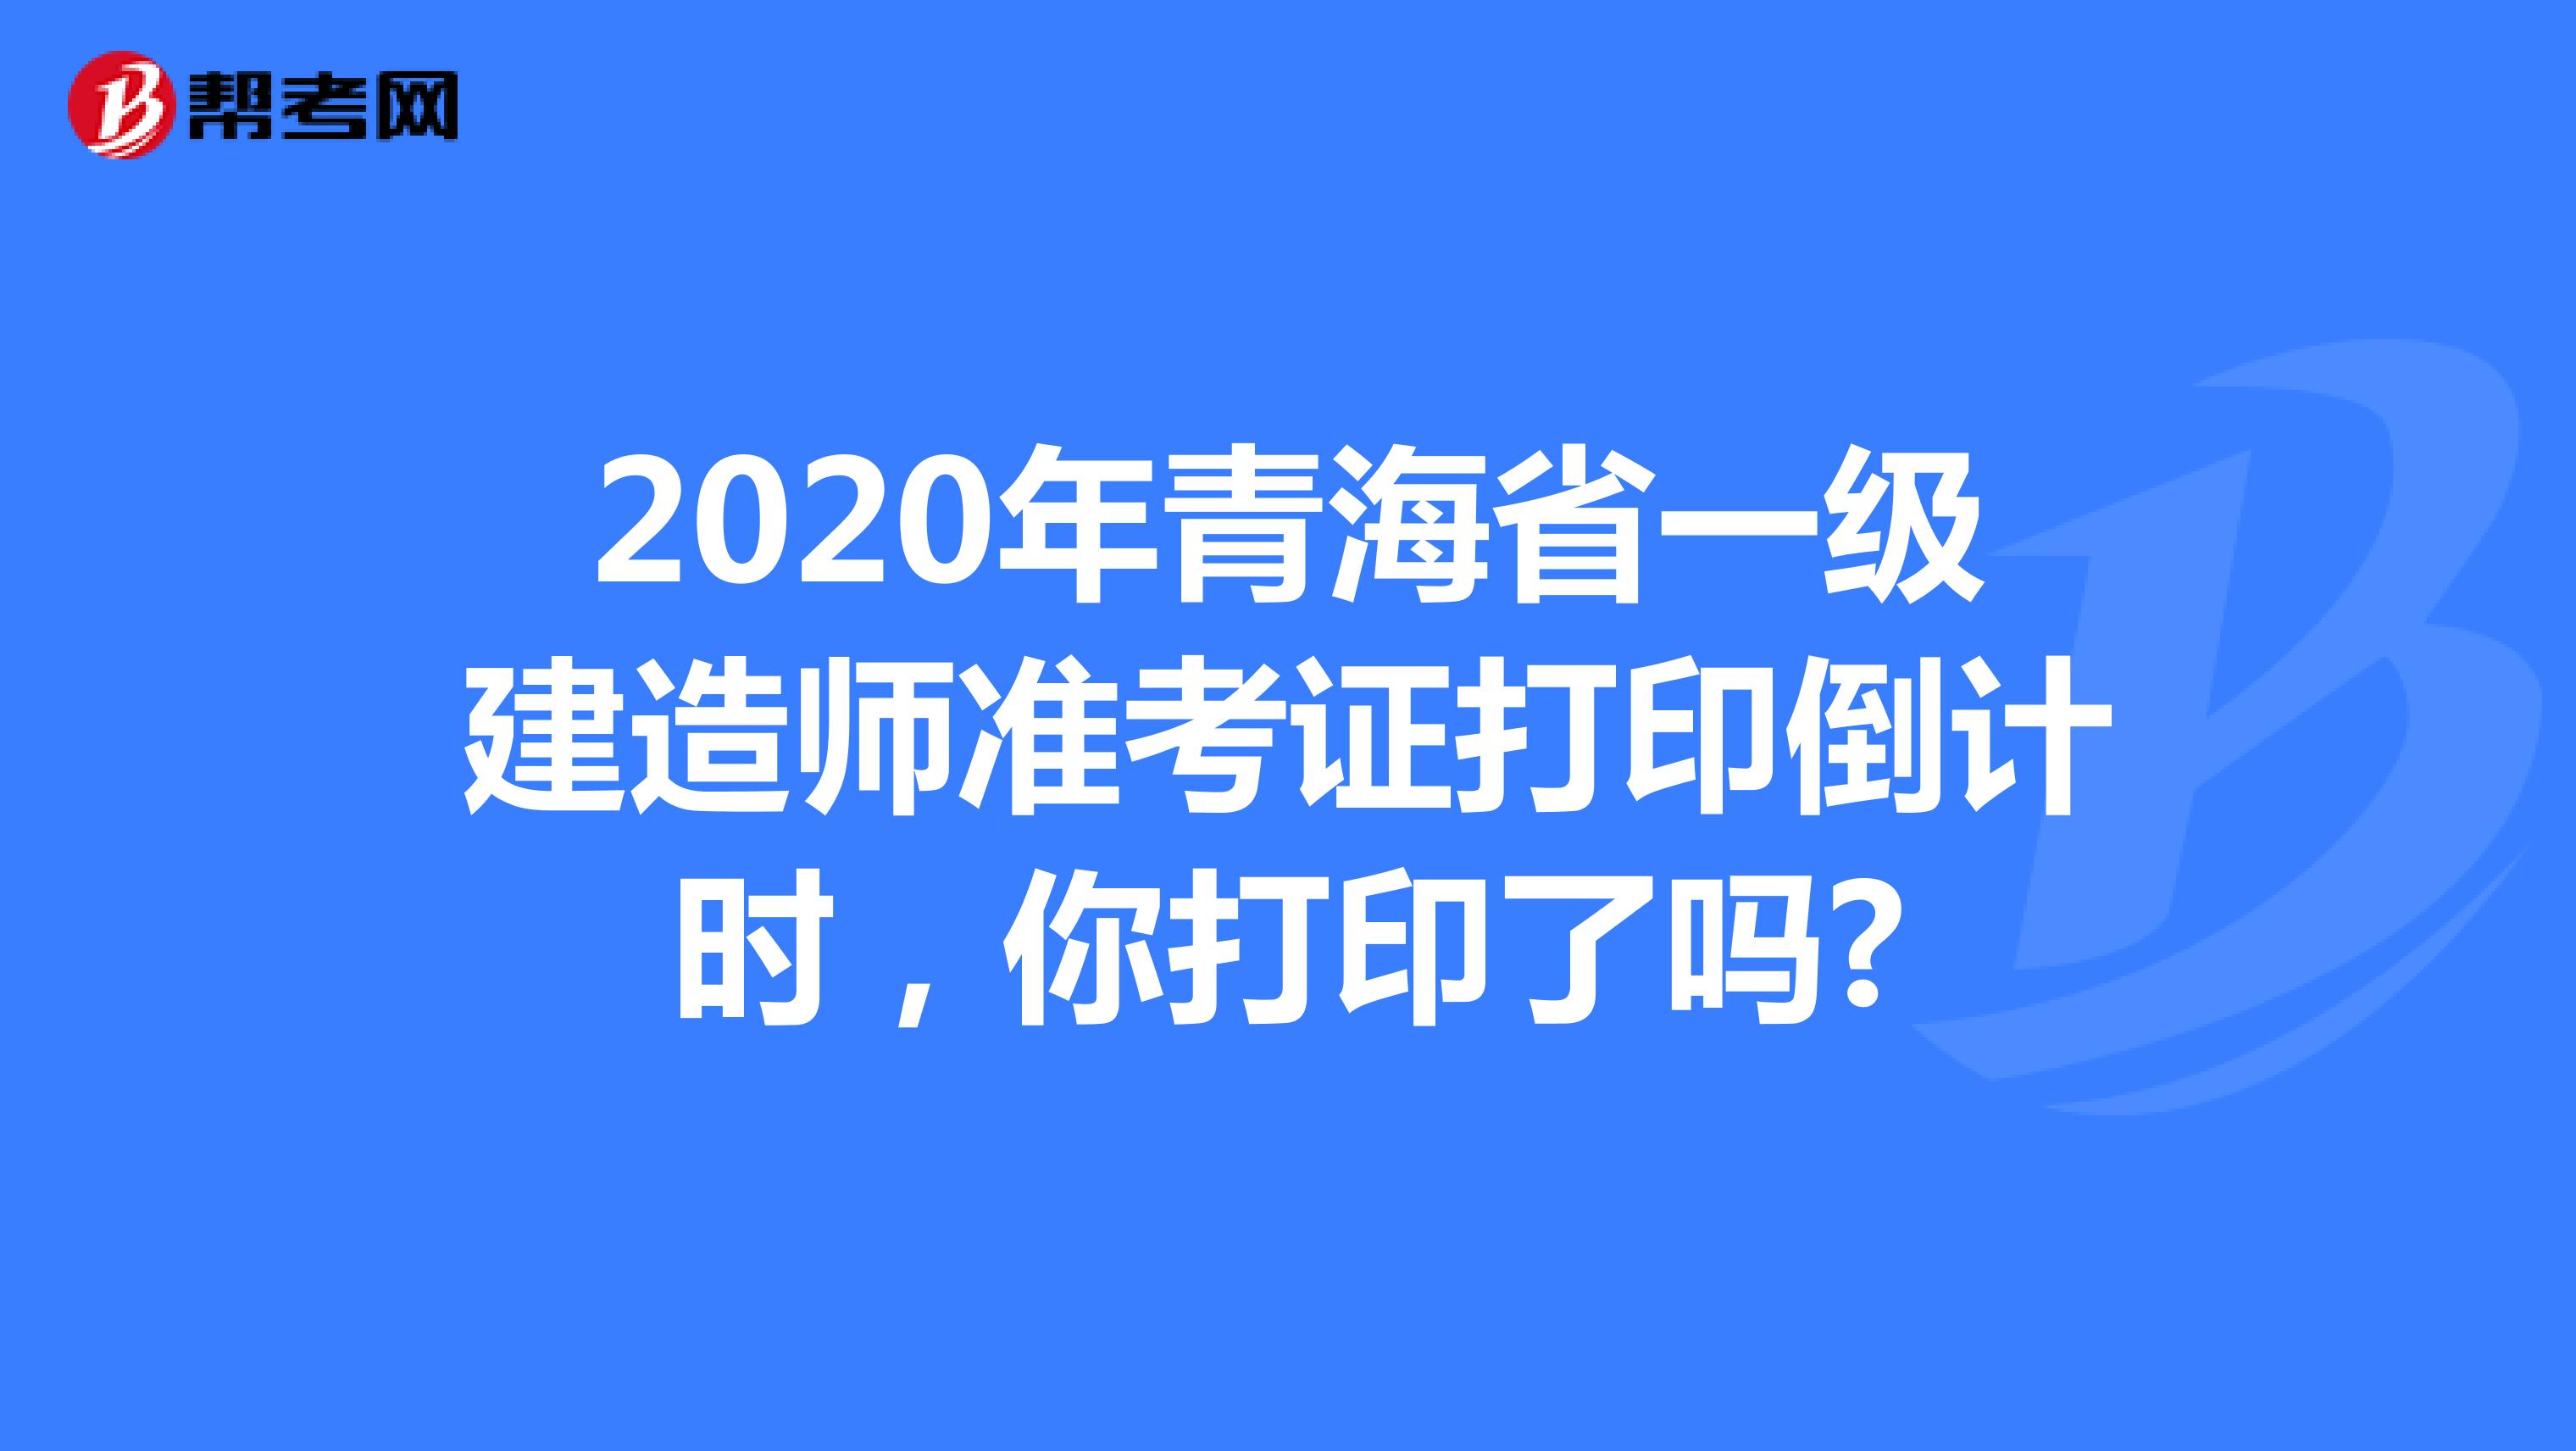 2020年青海省一级建造师准考证打印倒计时，你打印了吗?